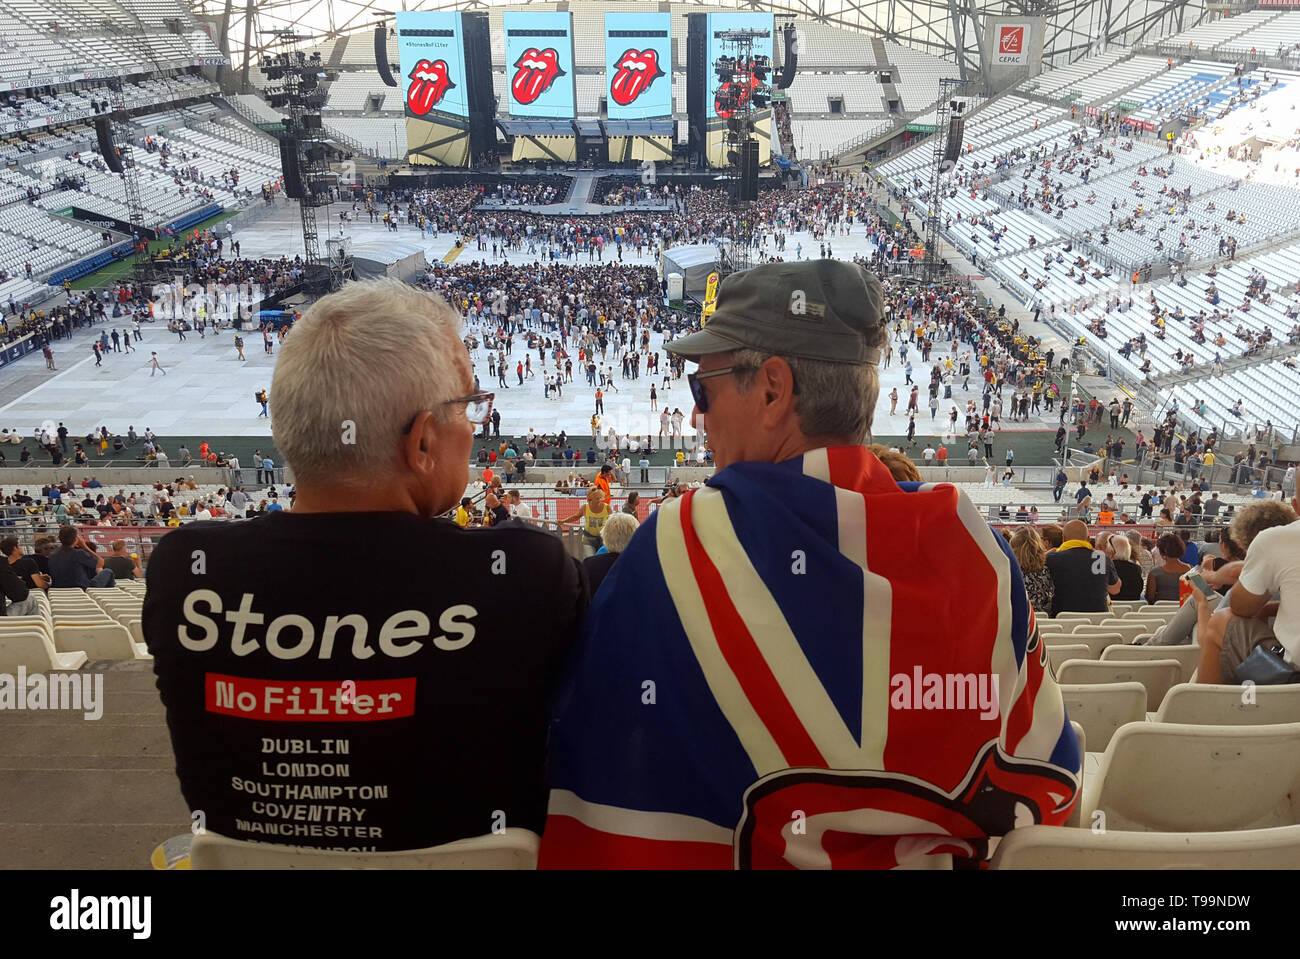 Rolling Stones Rock gli appassionati di musica, uno drappeggiati con la Union Jack Flag, attendere l'inizio di un concerto dei Rolling Stones durante il leggendario gruppo di nessun filtro Tour in Velodrome Stadium di Marsiglia (26 giugno 2018) Foto Stock